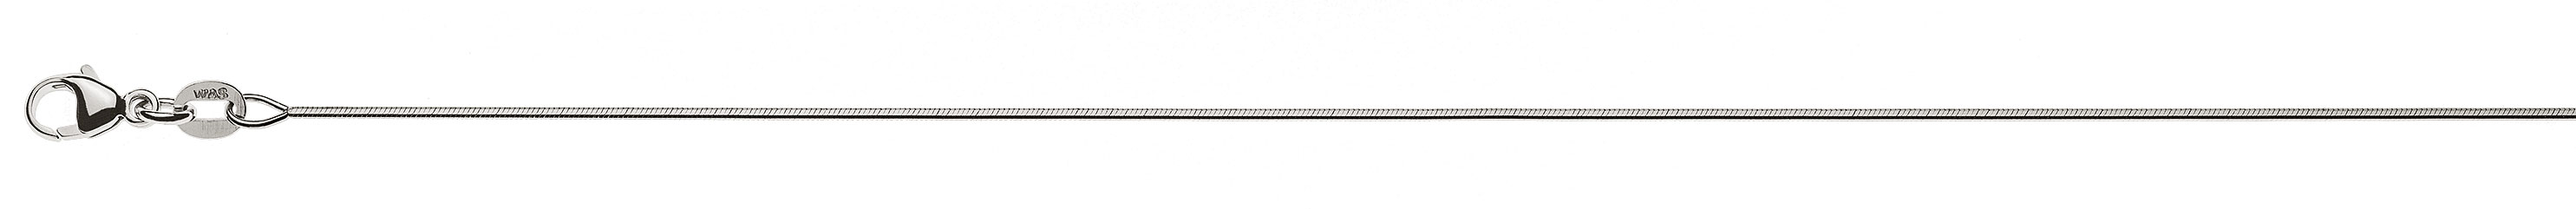 AURONOS Prestige Halskette Weissgold 18K Schlangenkette diamantiert 38cm 0.8mm